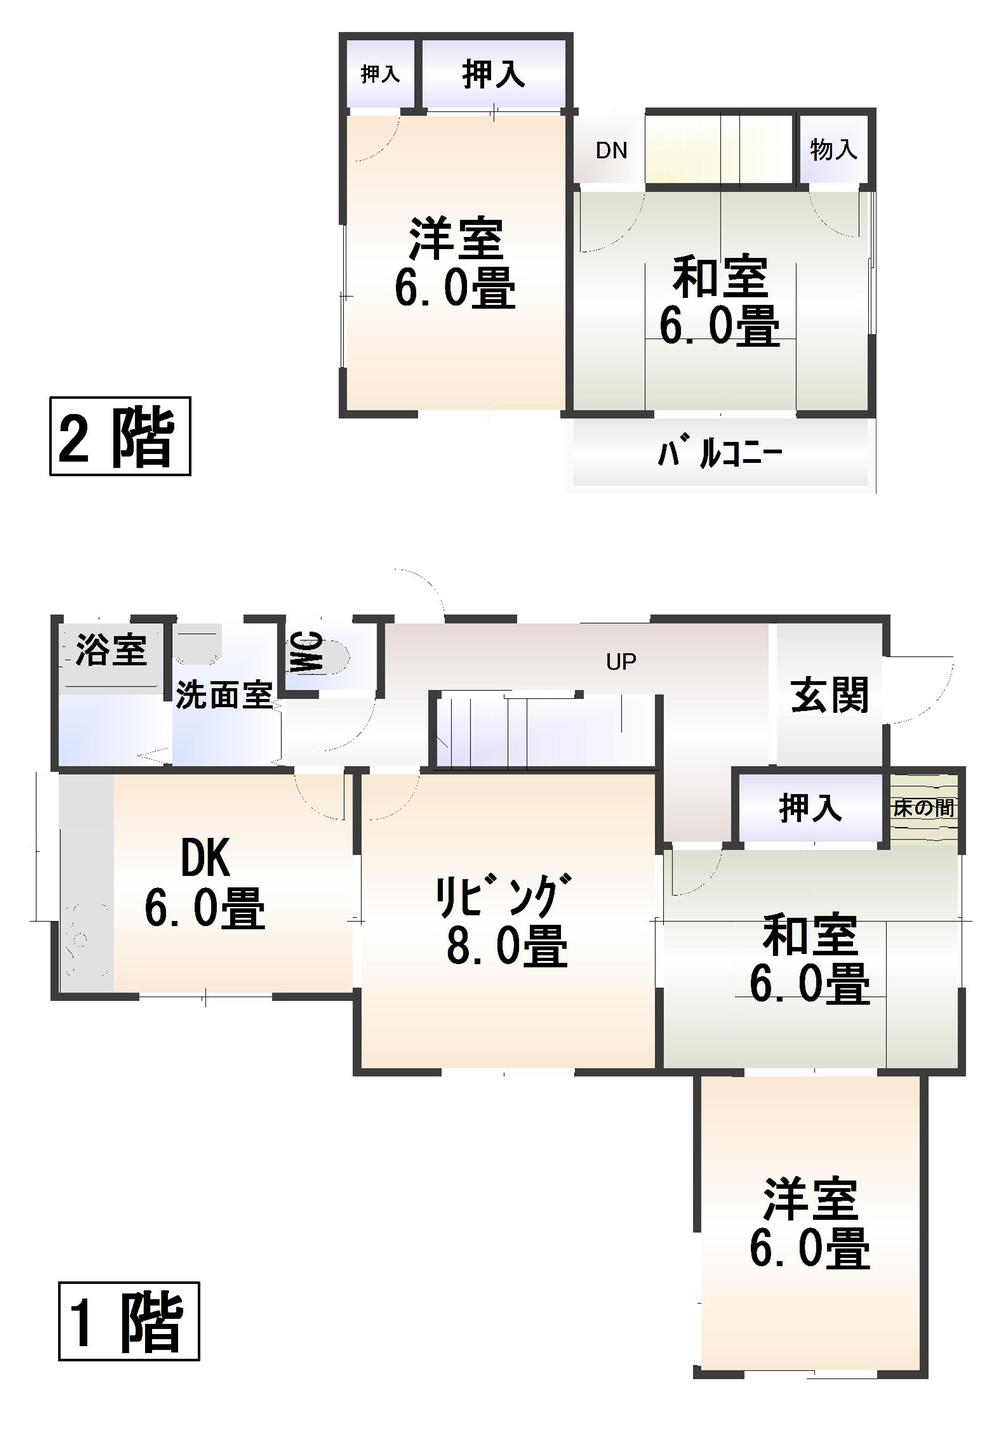 Floor plan. 8.9 million yen, 4LDK, Land area 277.76 sq m , Building area 81.15 sq m